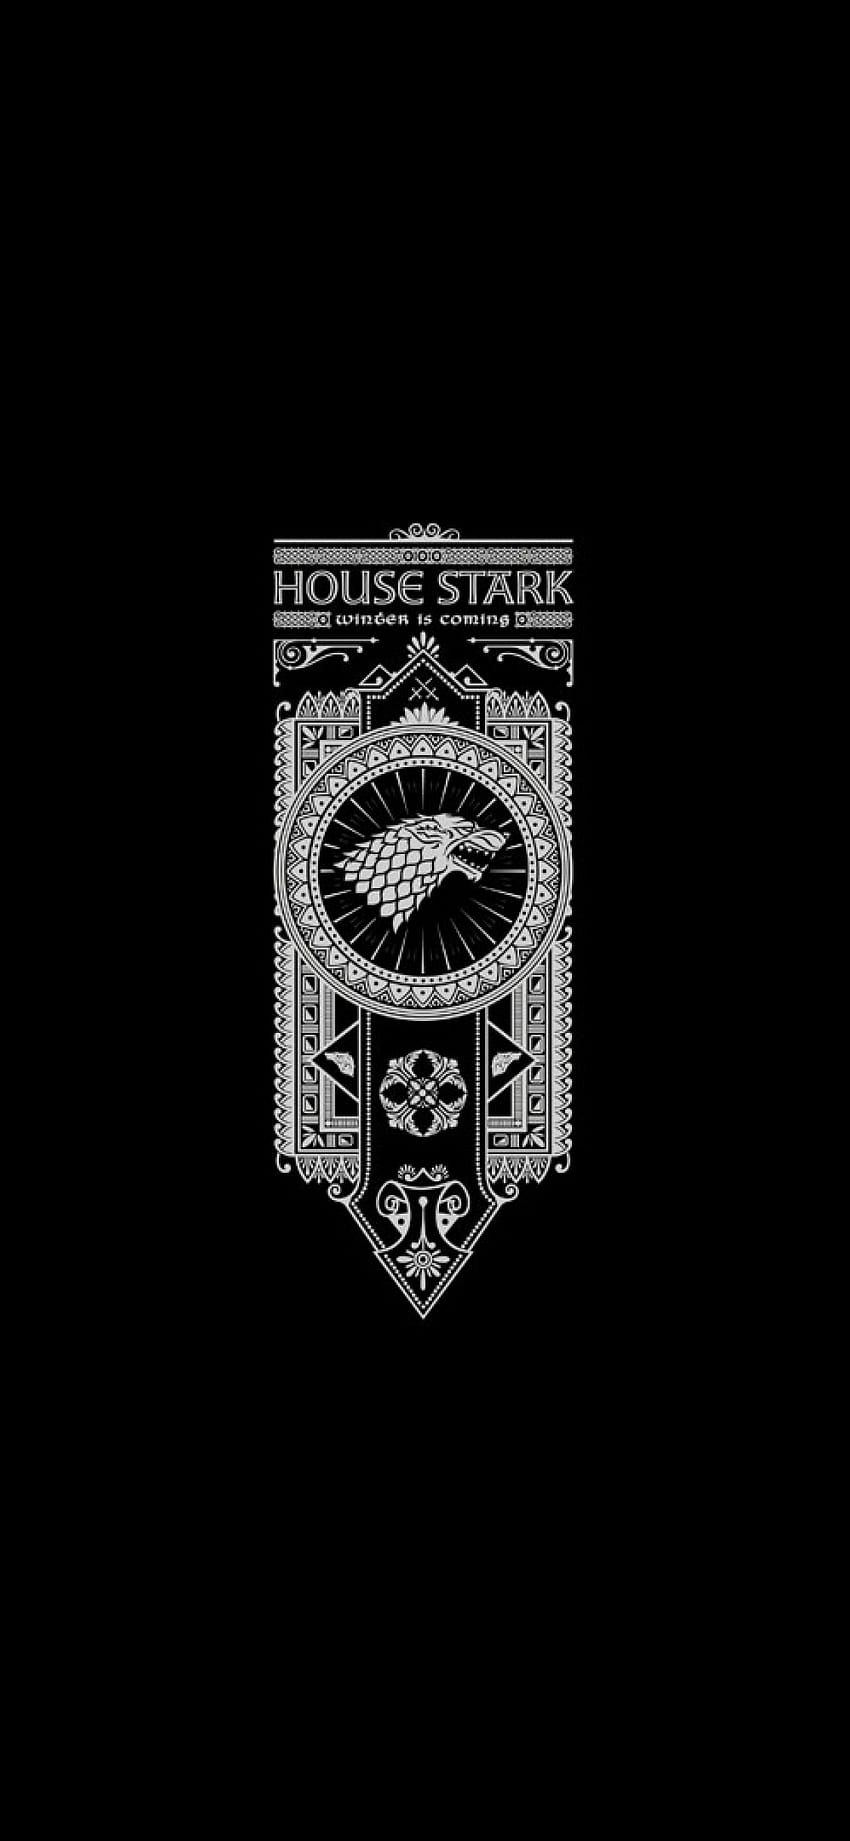 House Stark Juego de Tronos Película iPhone XS, iPhone 10, iPhone X, Películas, y fondo de pantalla del teléfono